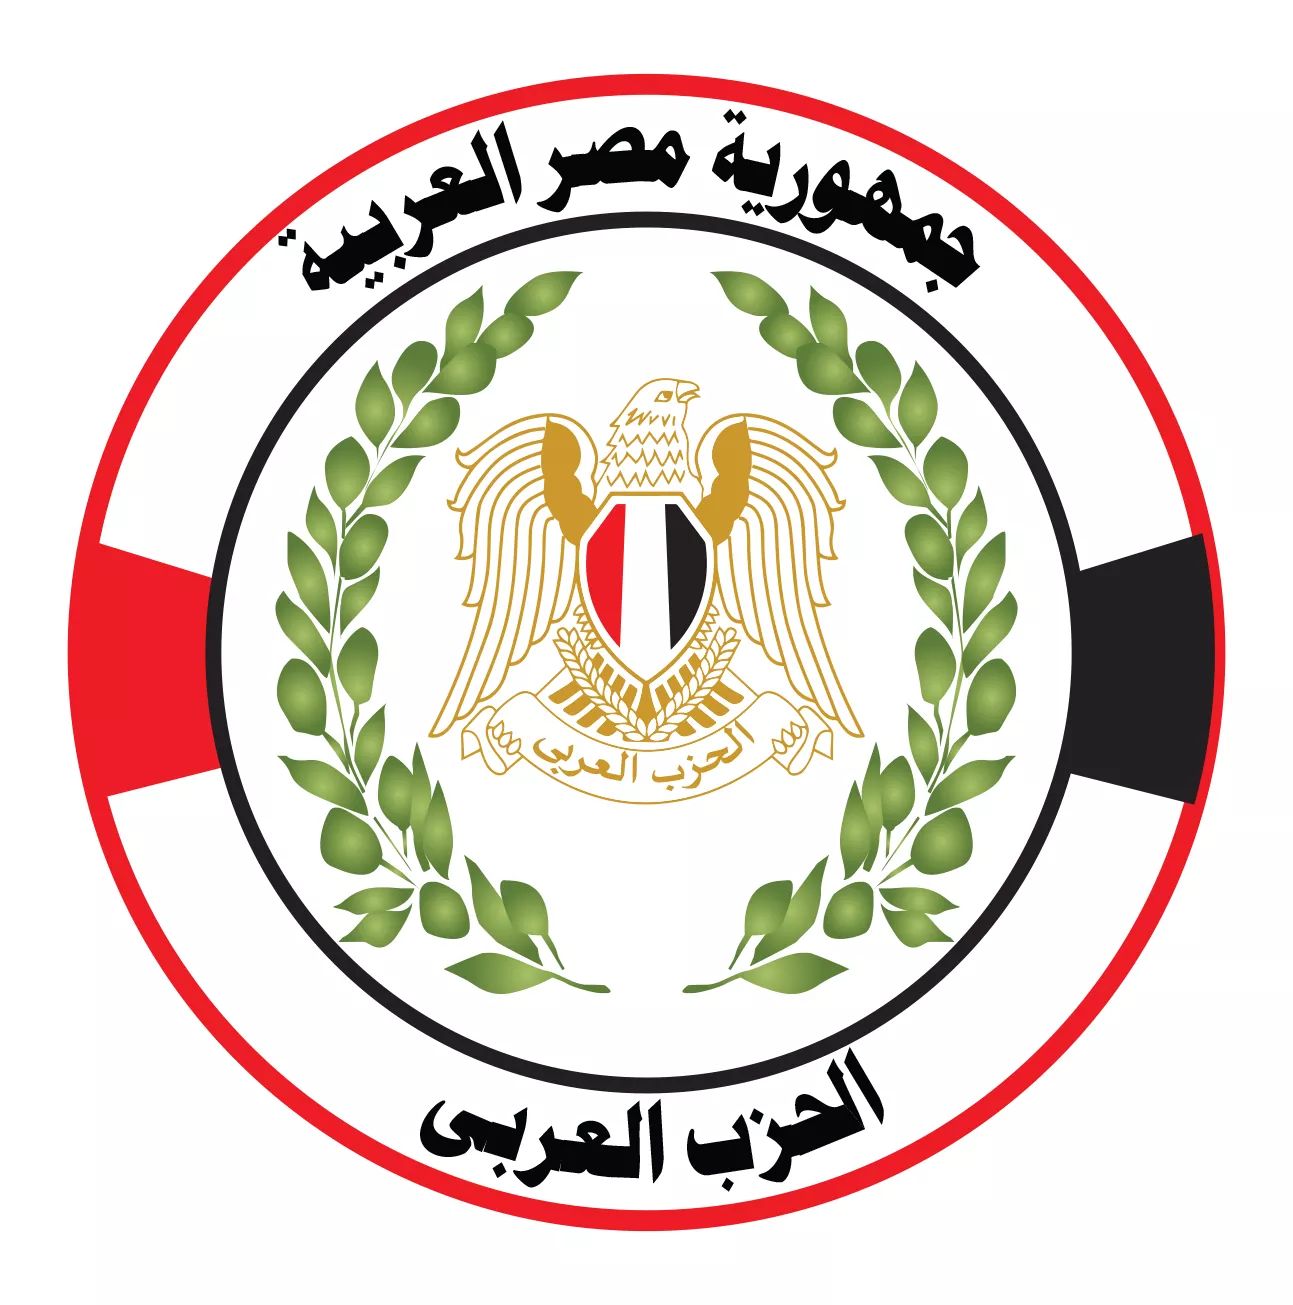   الحزب العربي يستنكر بيان «تيار الكرامة» ويحذر من الانسياق للحملة الممنهجة التي تستهدف استقرار مصر